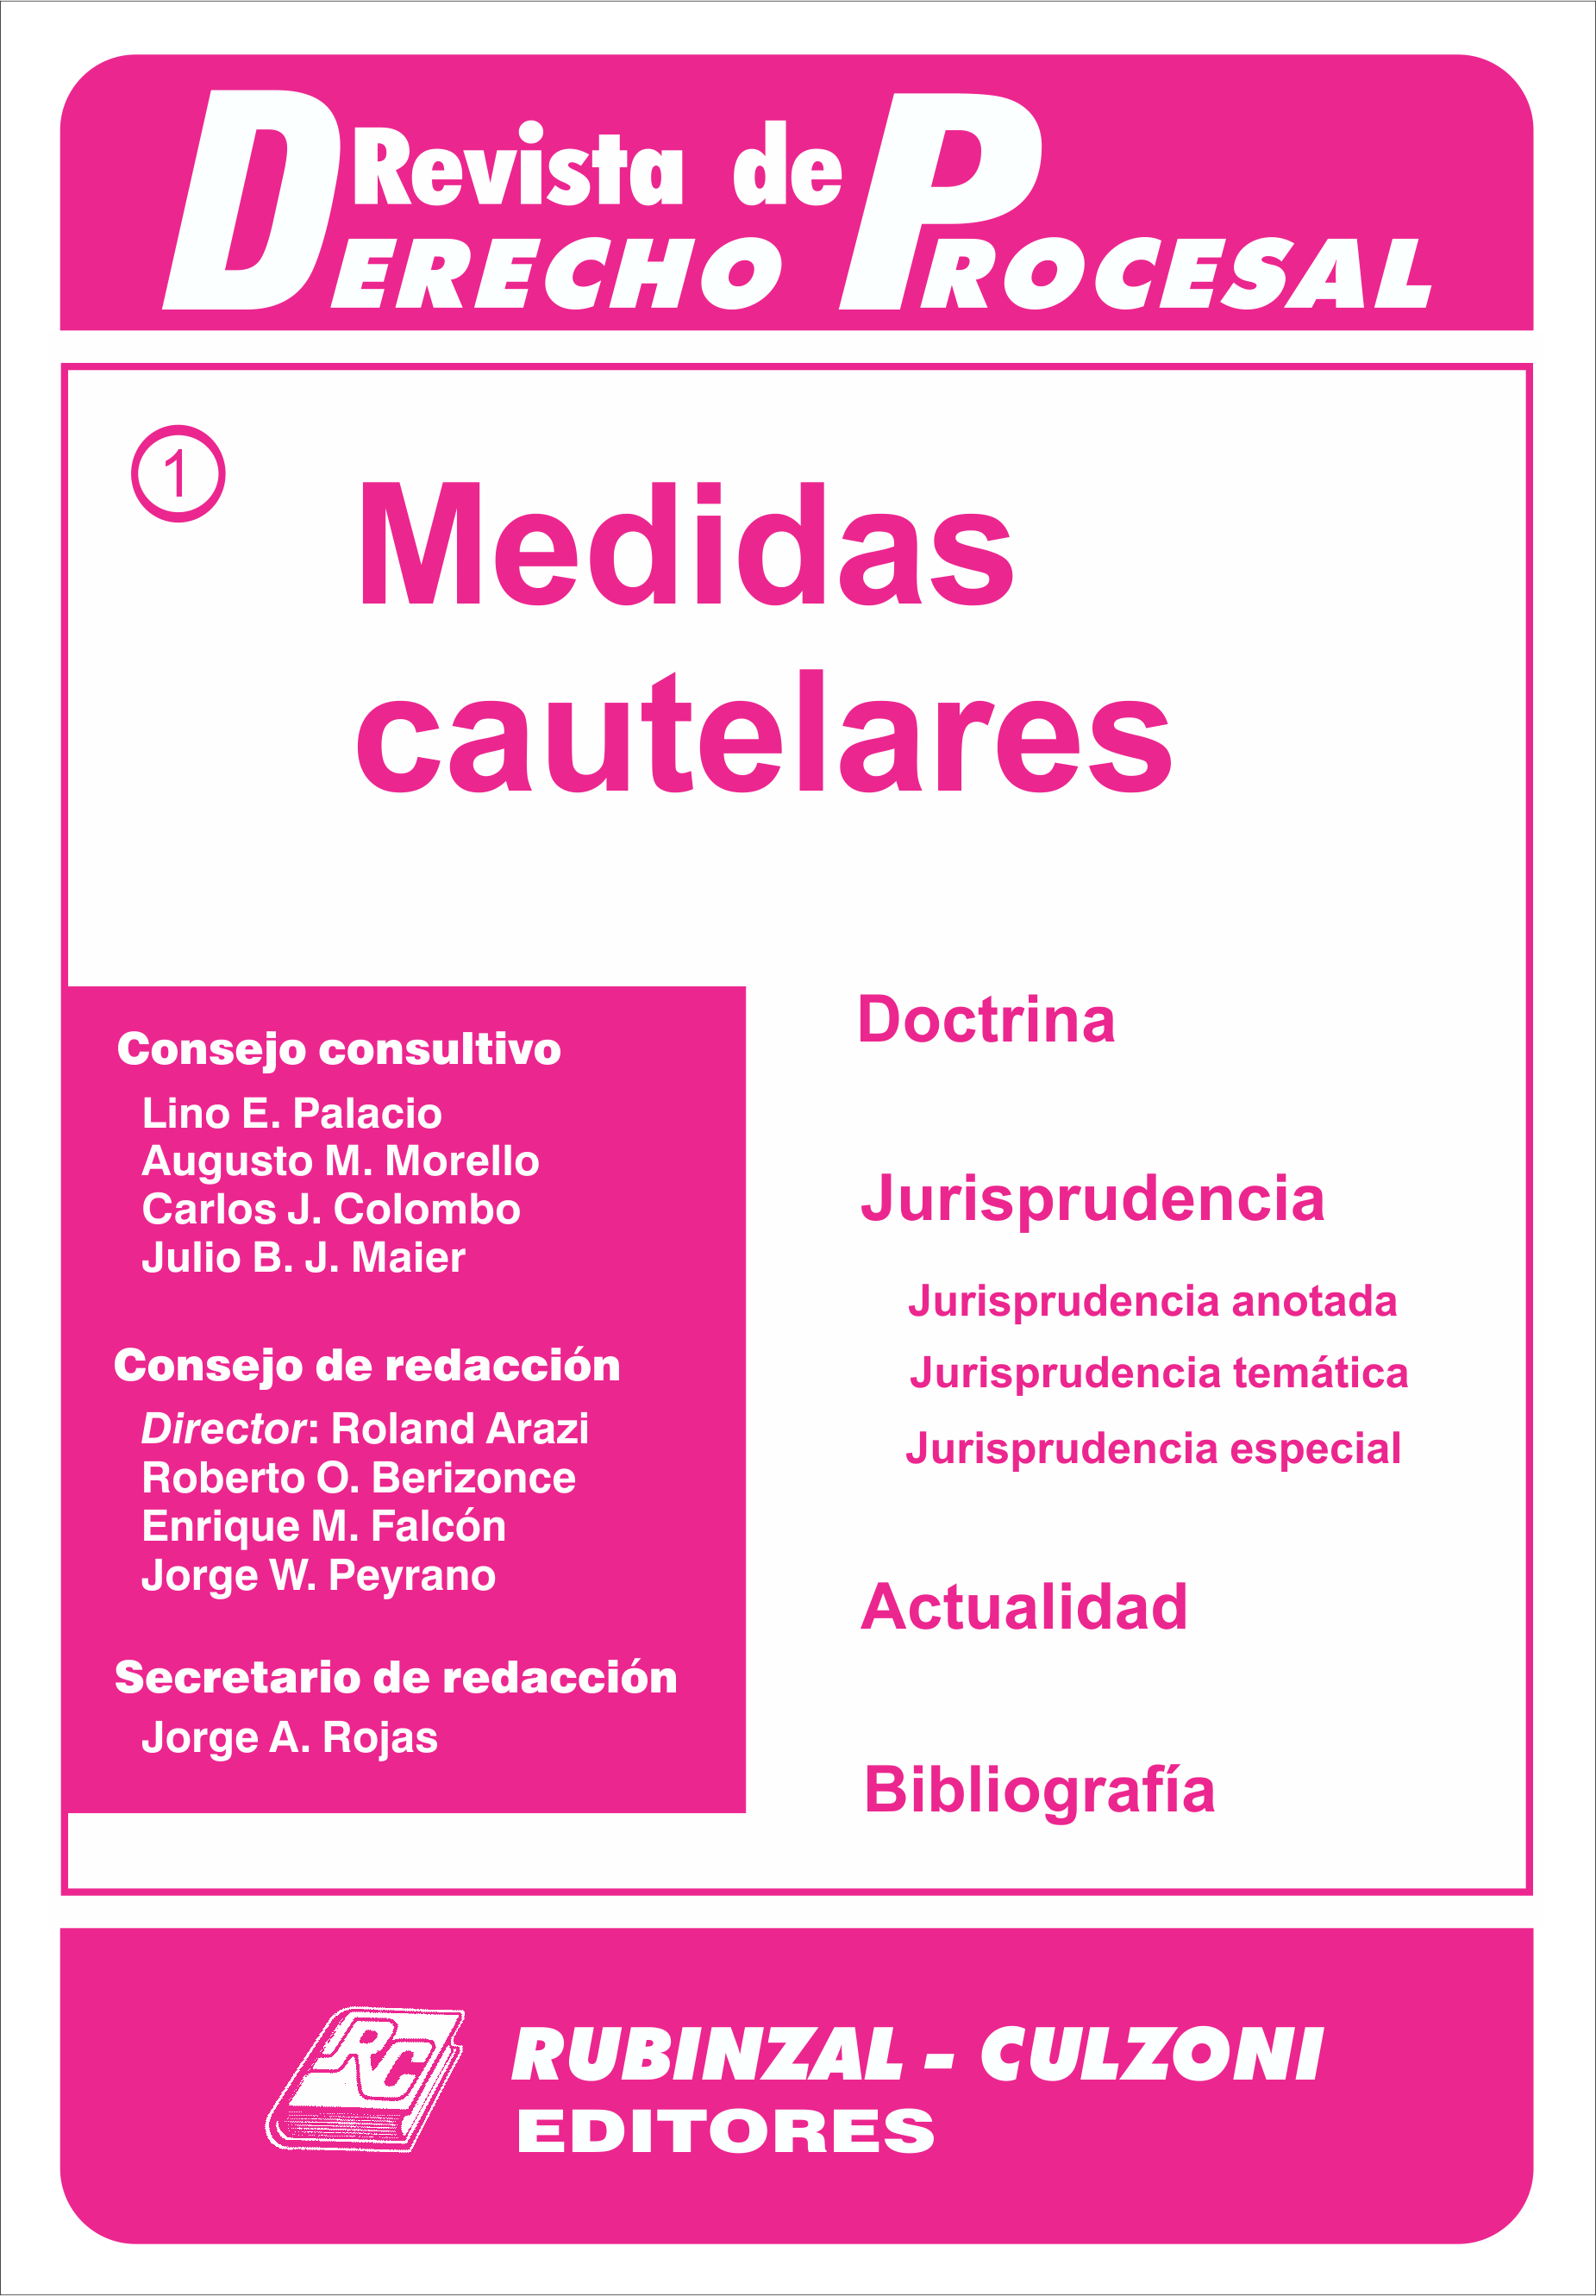 Revista de Derecho Procesal - Medidas Cautelares.